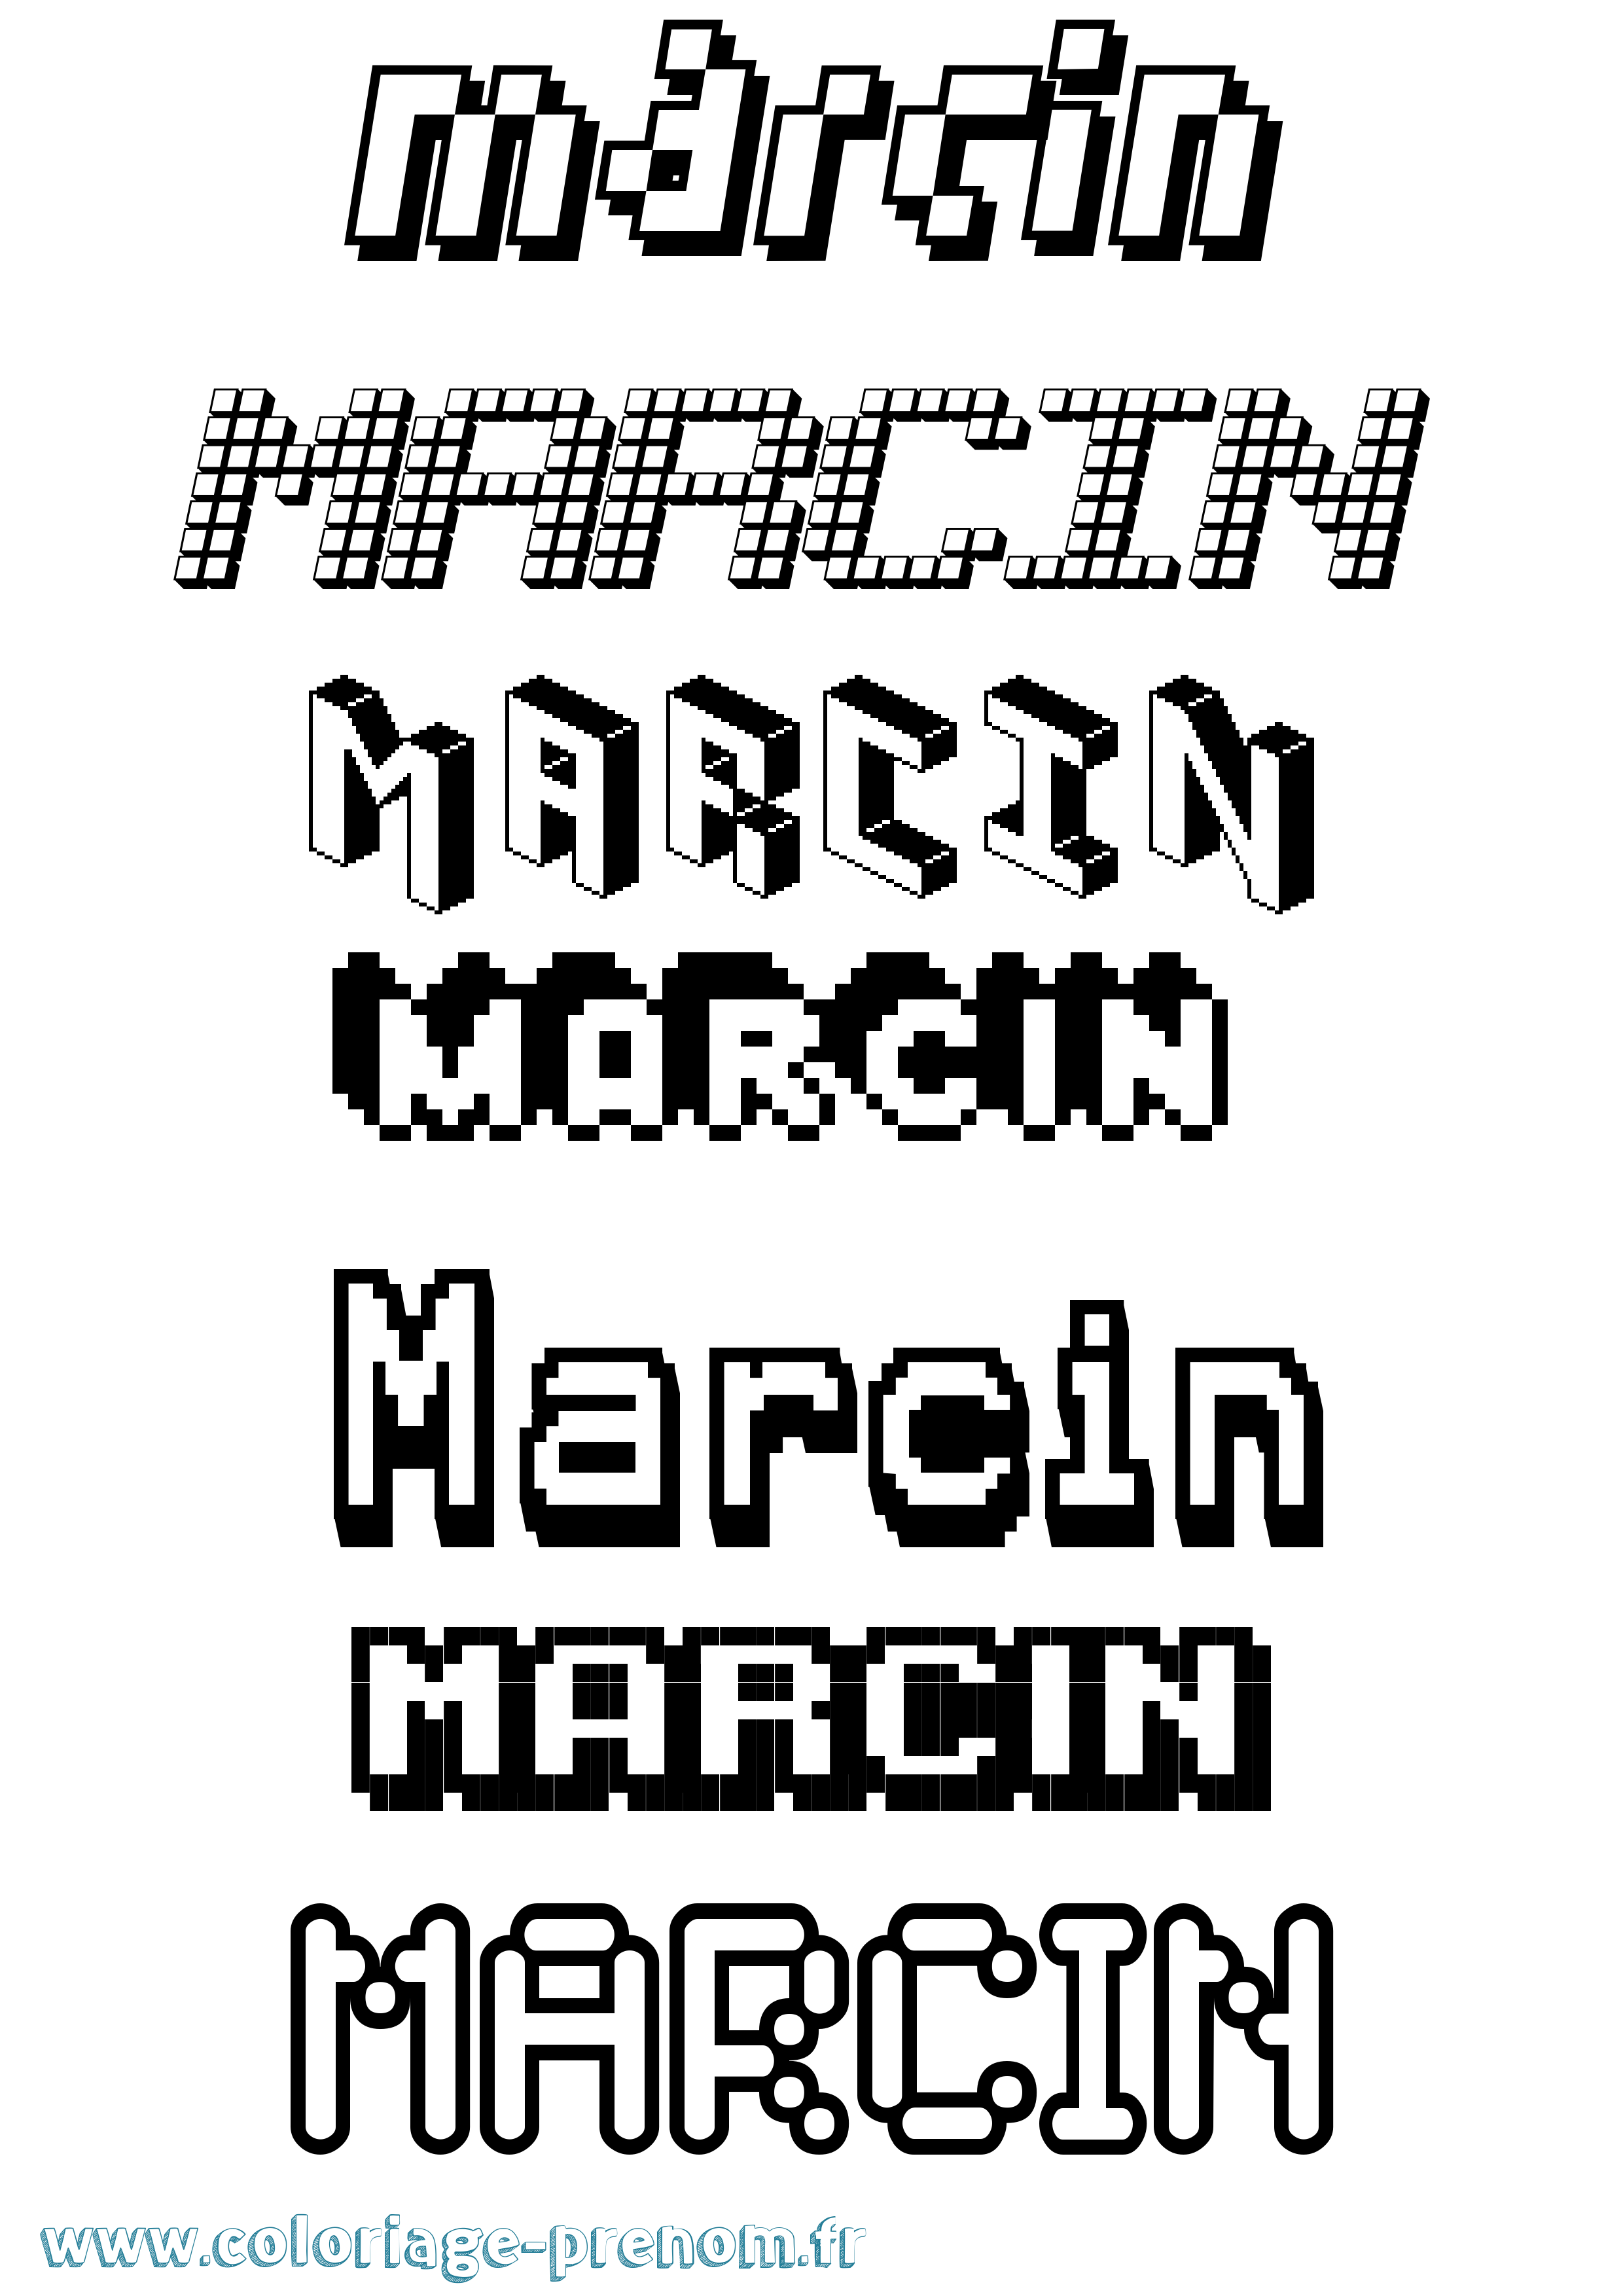 Coloriage prénom Marcin Pixel